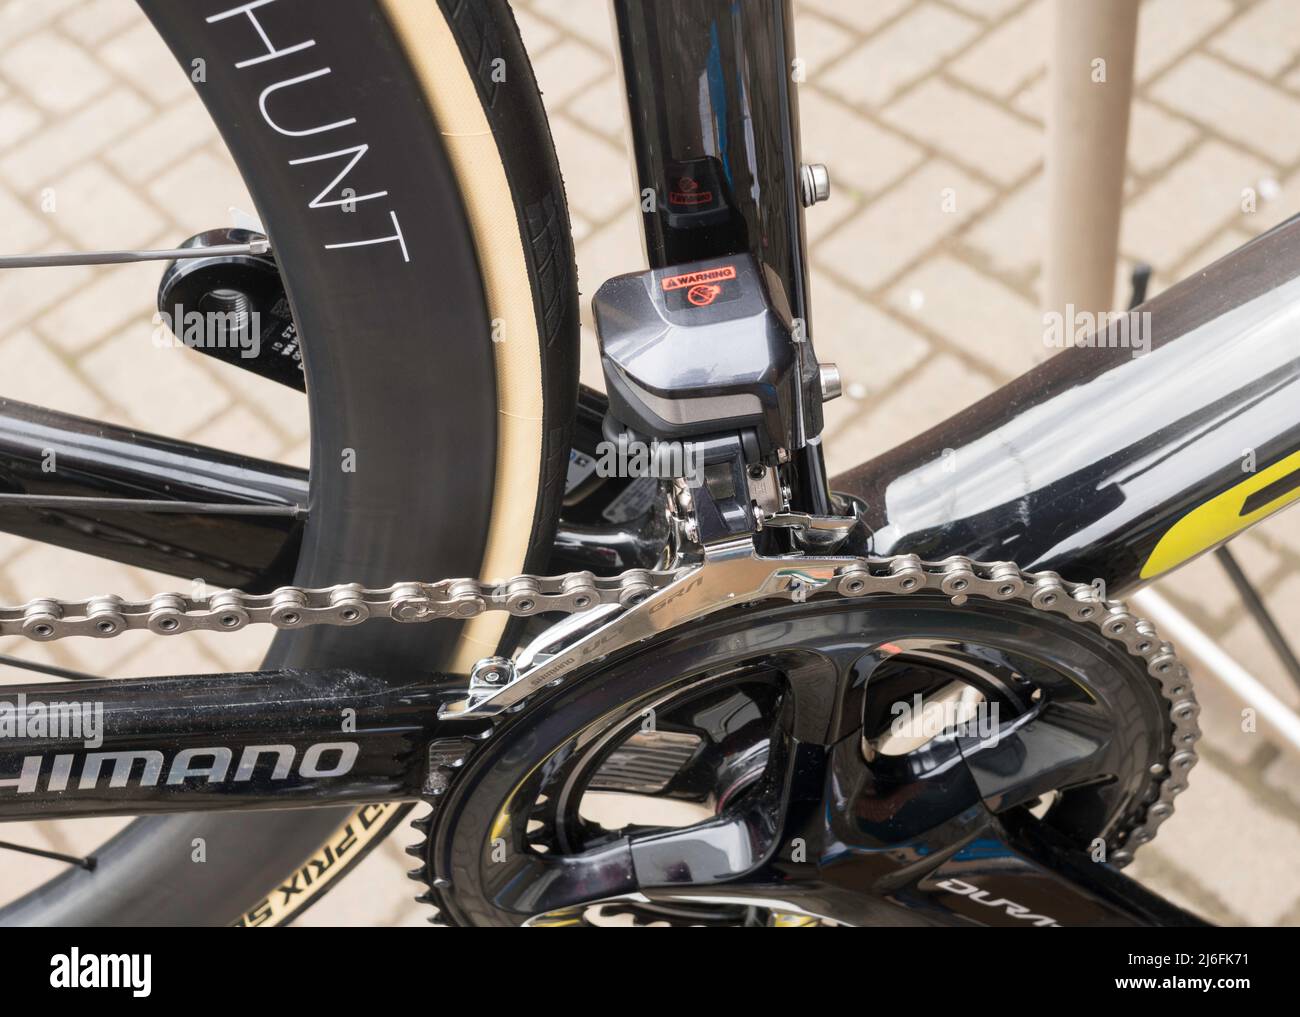 Shimano Ultegra elektrisch betriebenes oder elektronisches Schaltwerk am Rennrad. Stockfoto